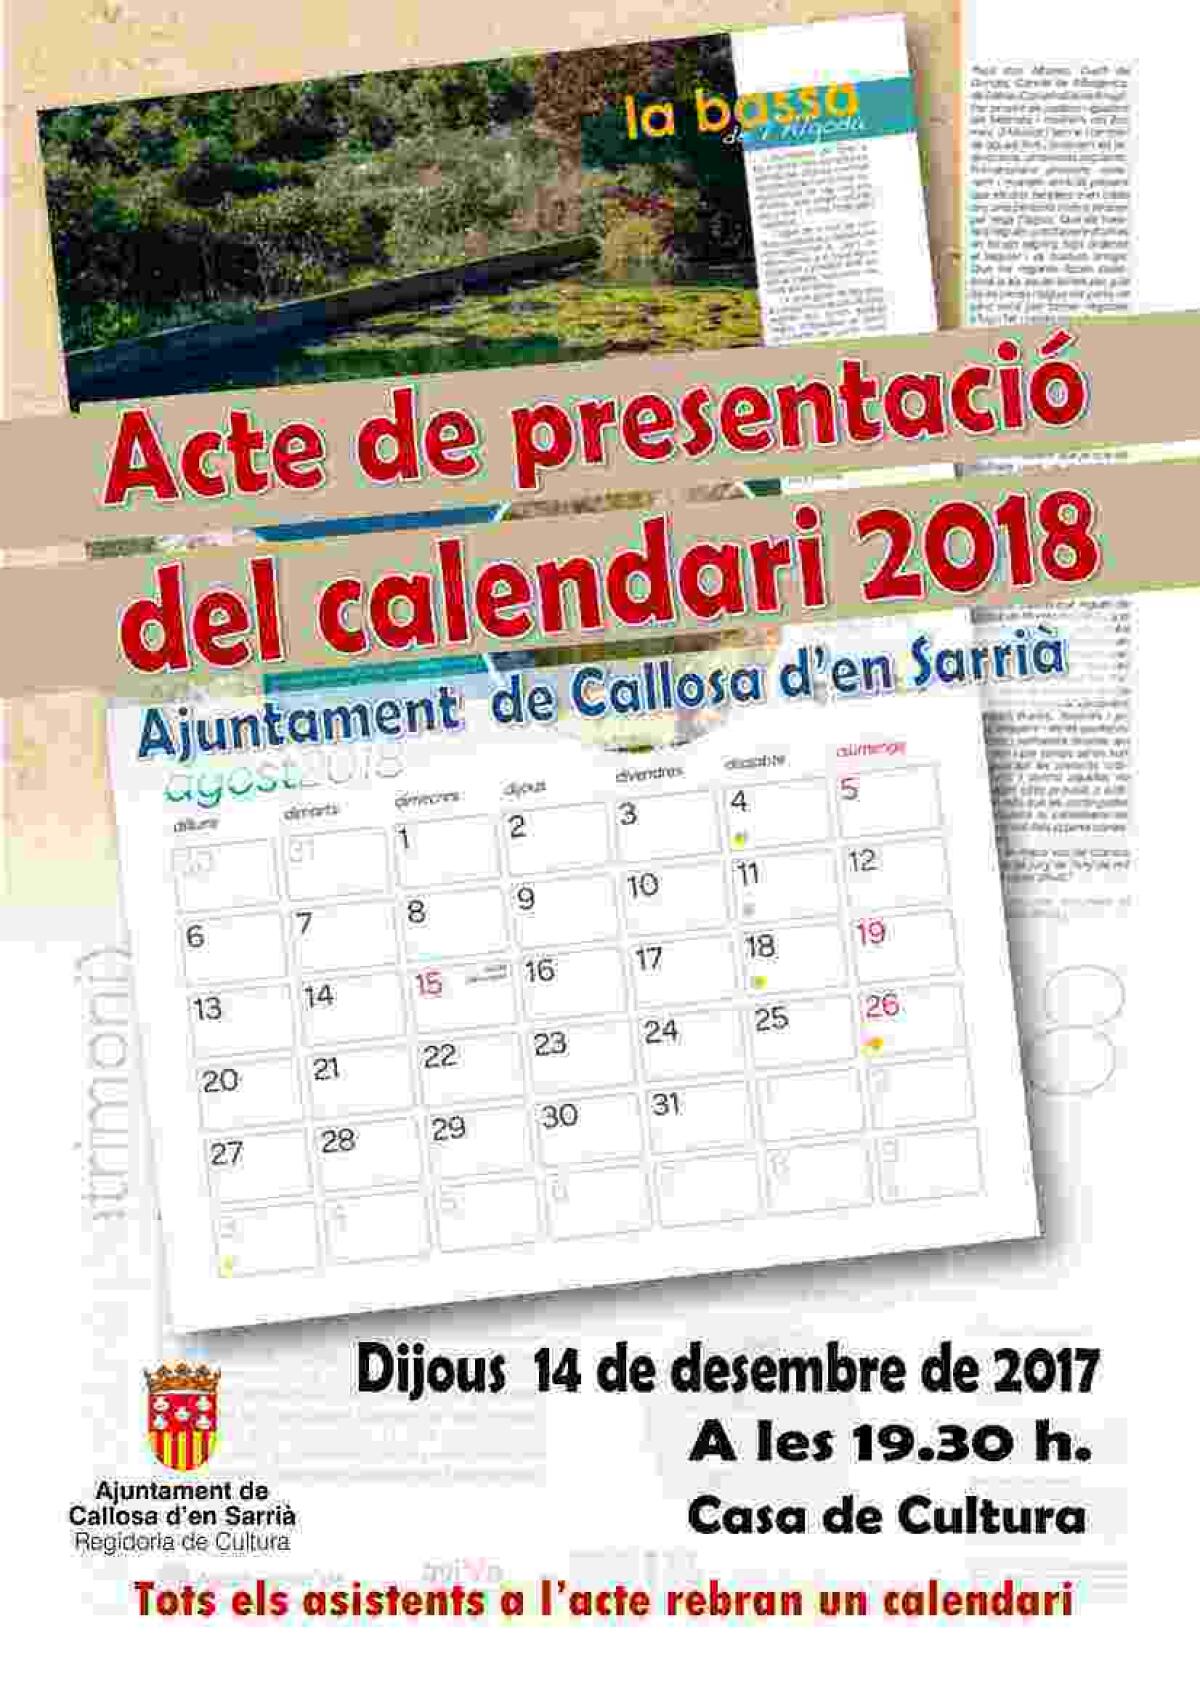 El ciclo del agua en Callosa será el protagonista de las imágenes del nuevo calendario 2018